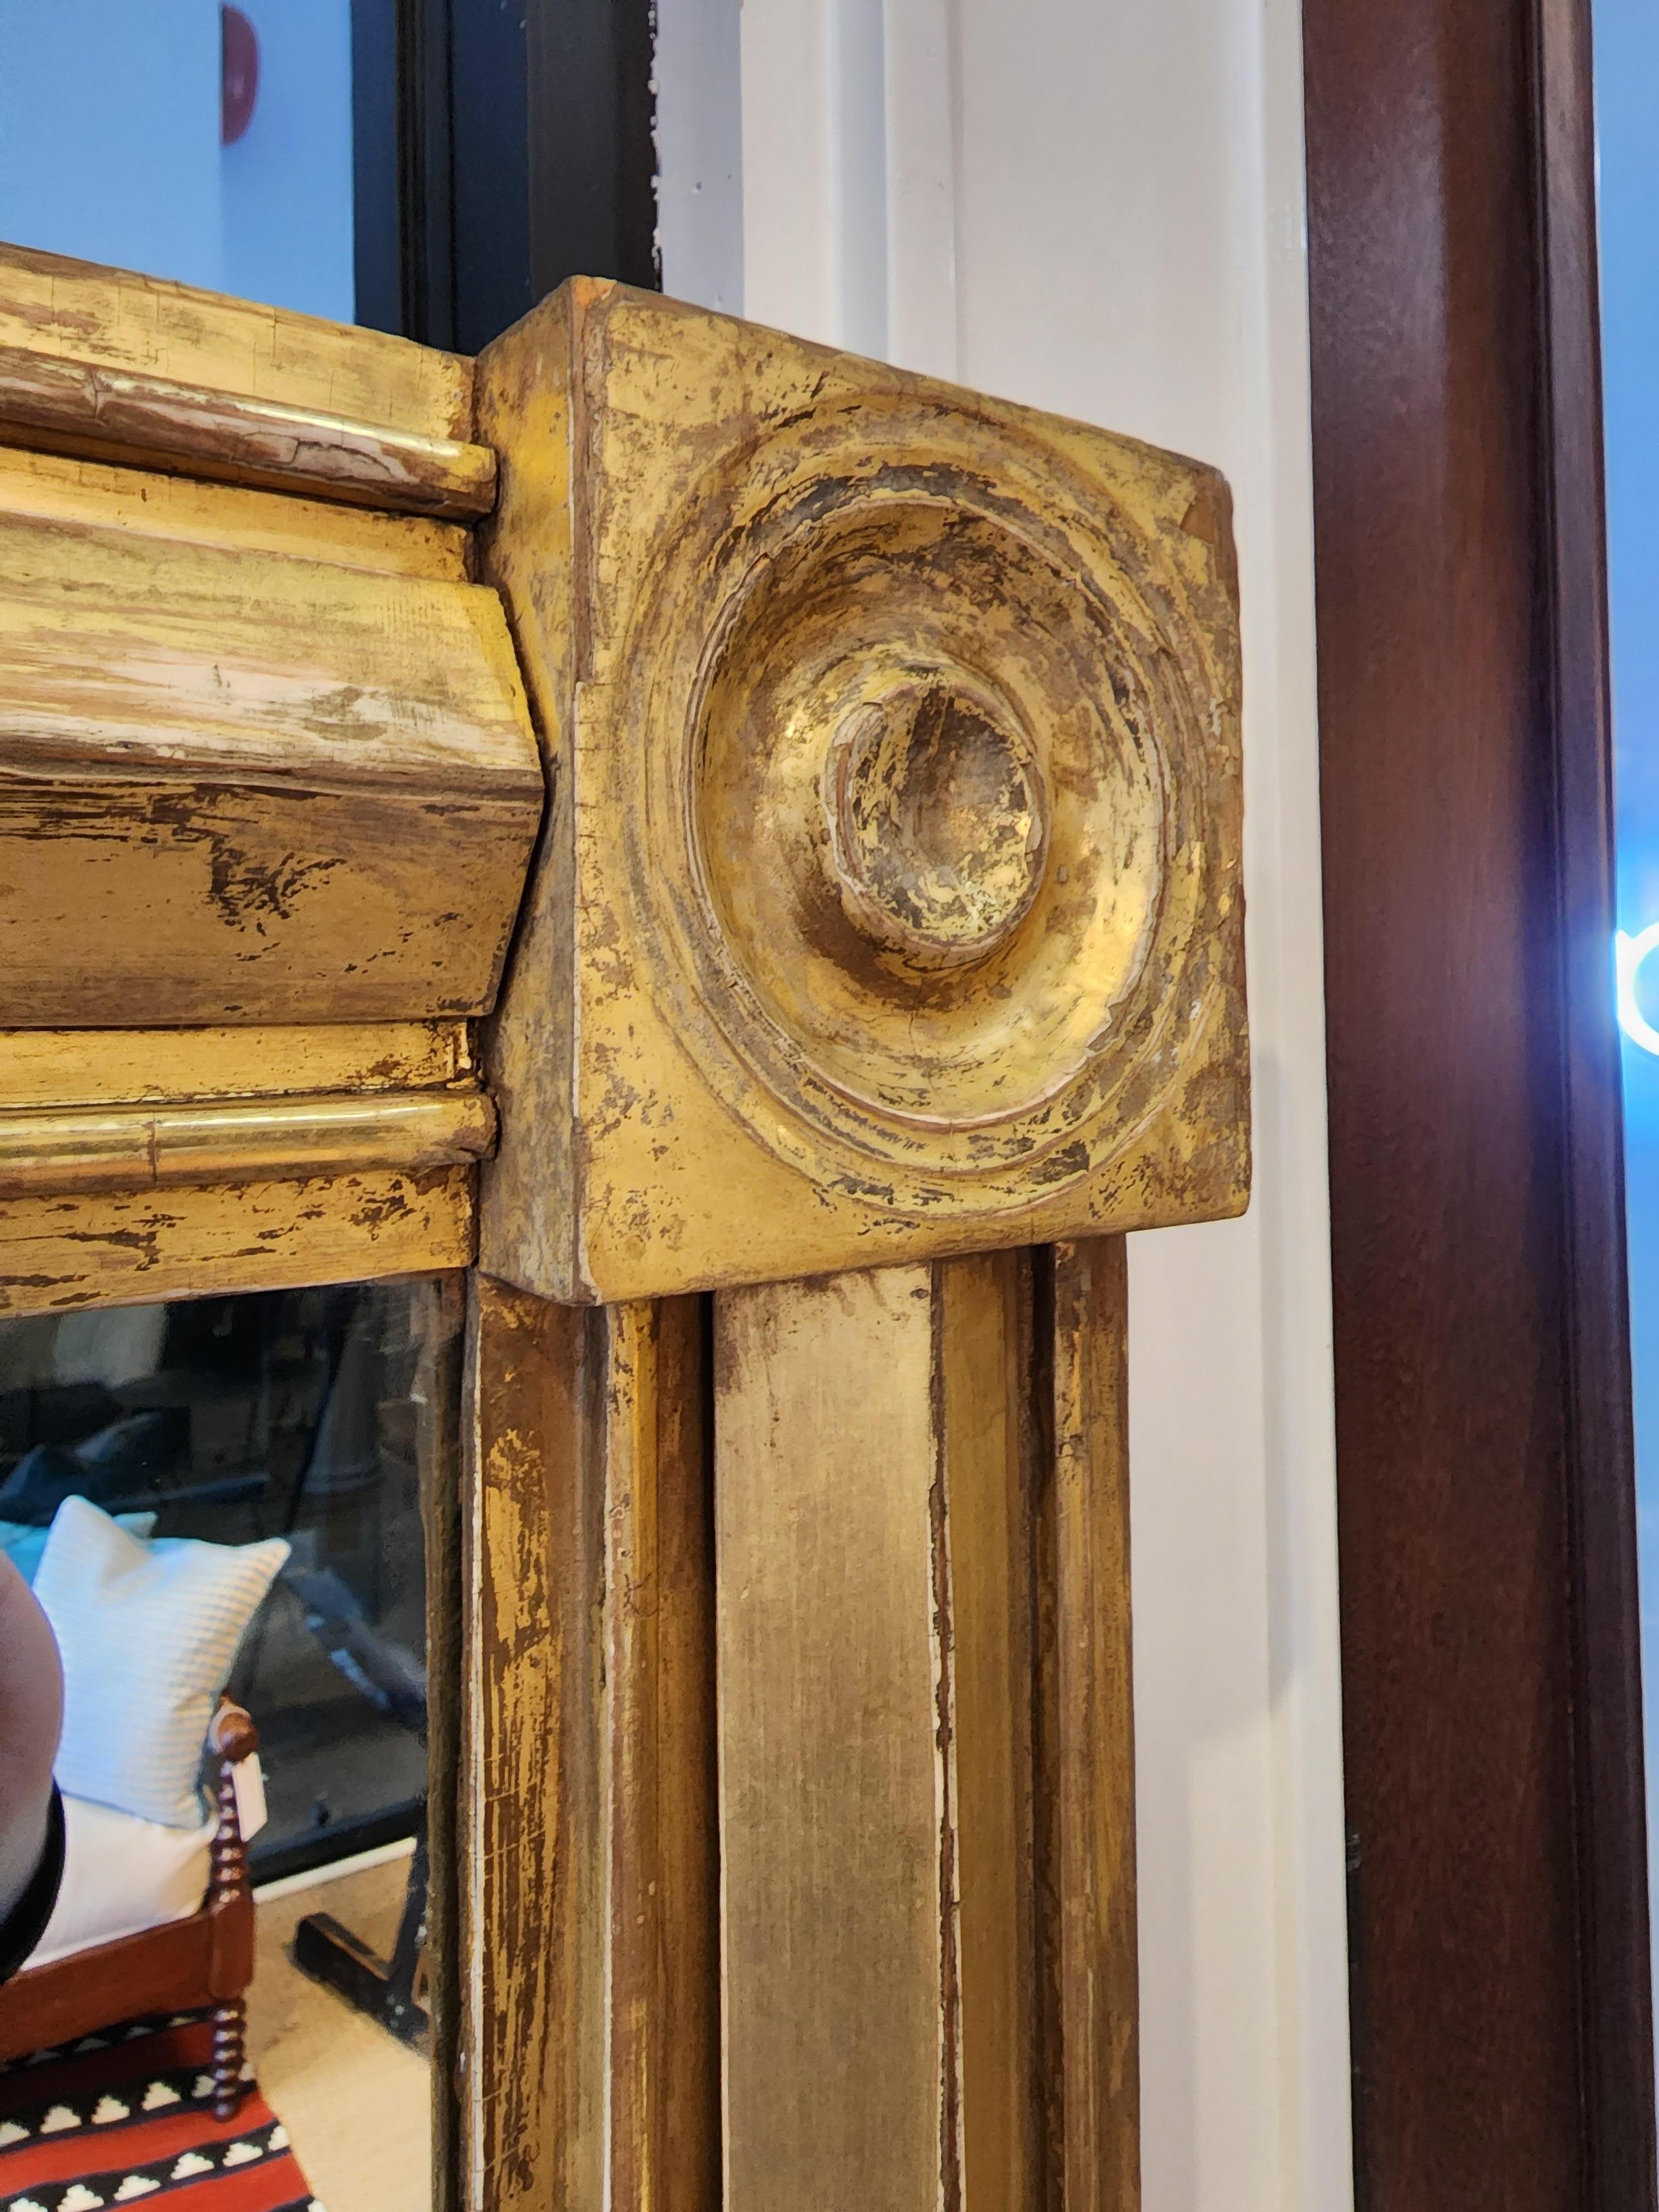 Ein amerikanischer Bundesspiegel von außergewöhnlicher Qualität, Tiefe und Design. Mit einer perfekten warmen Patina und unter Beibehaltung der ursprünglichen Goldvergoldung und des Spiegelglases. Dieser ungewöhnlich geformte Spiegel im klassischen